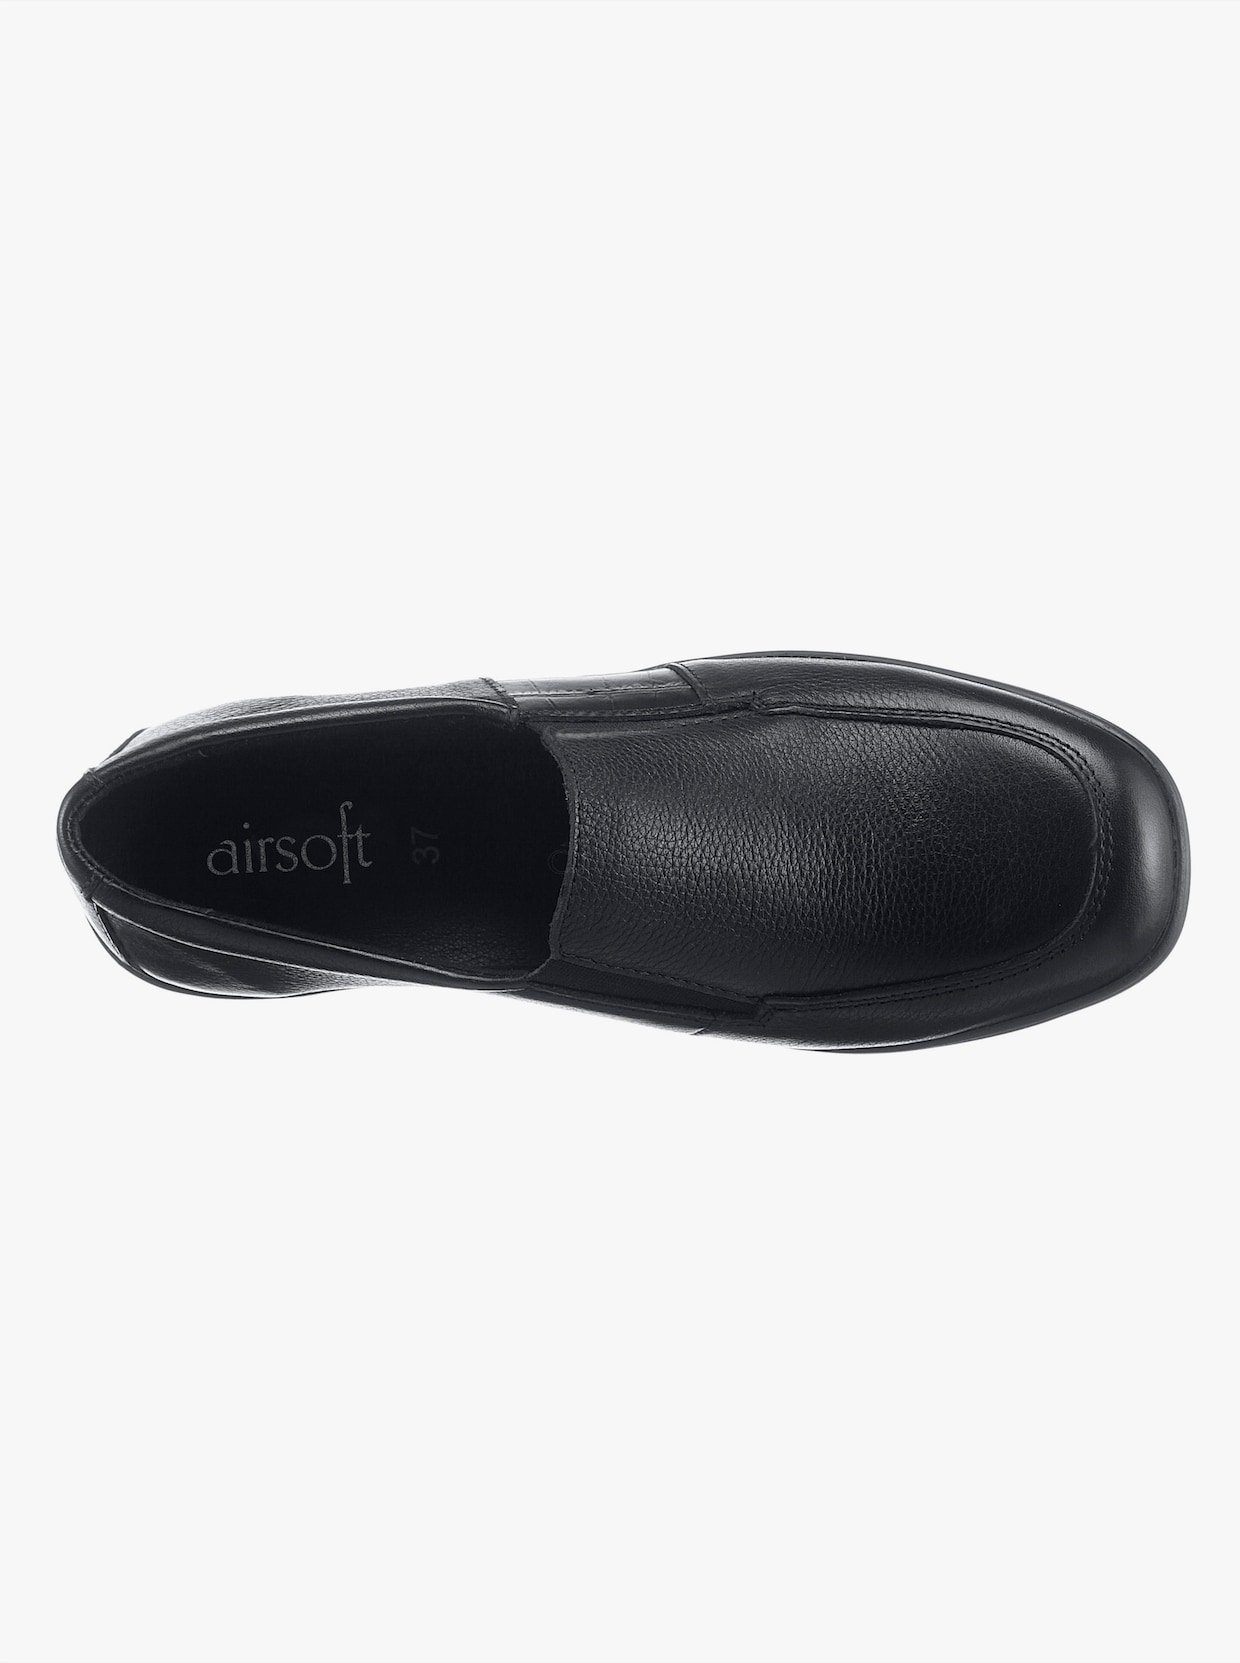 airsoft comfort+ Skor - svart